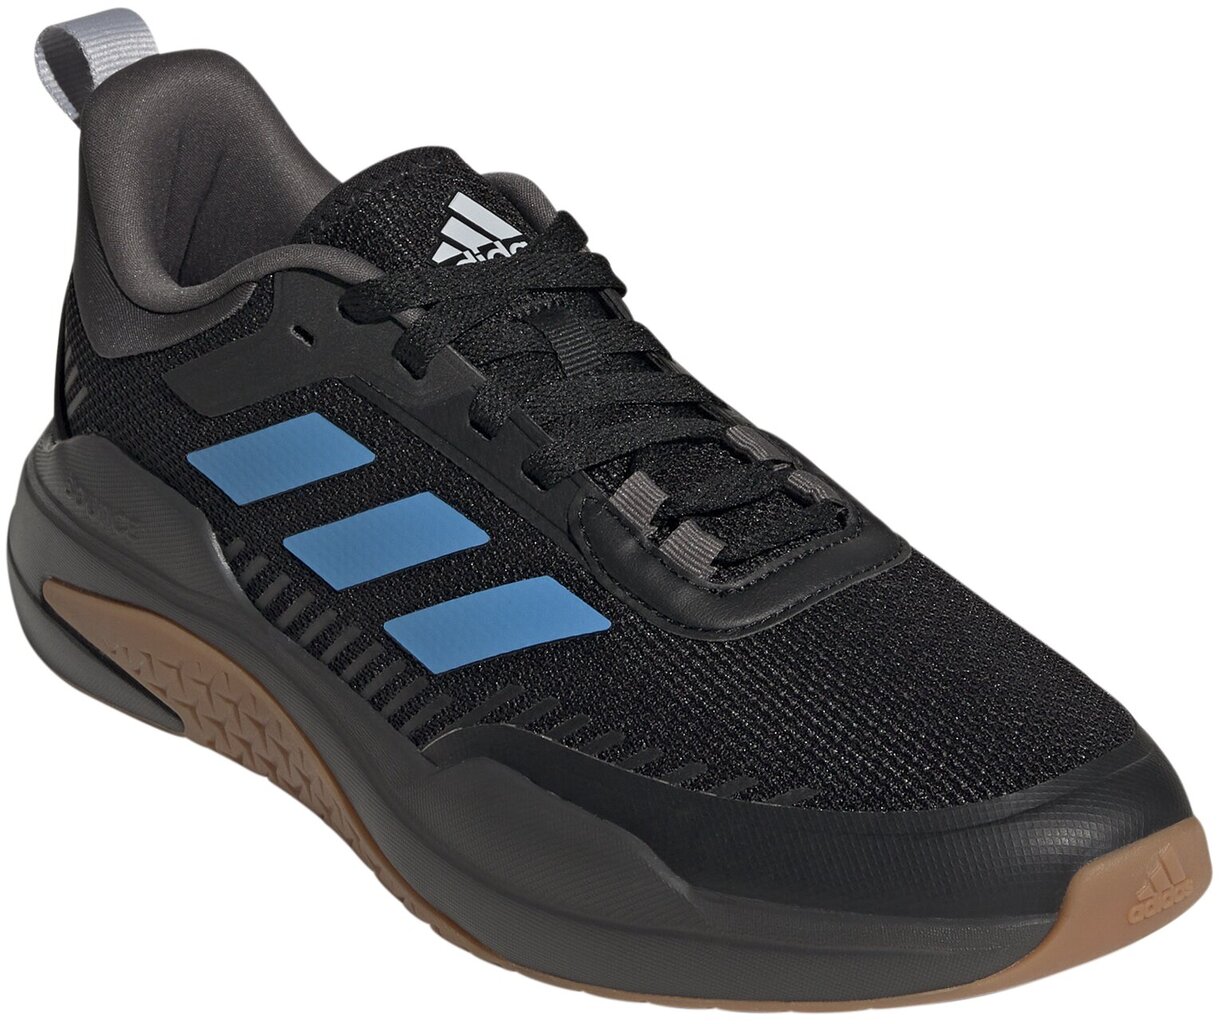 Sportininiai batai vyrams Adidas Trainer V Blue Black GW4056 kaina ir informacija | Kedai vyrams | pigu.lt